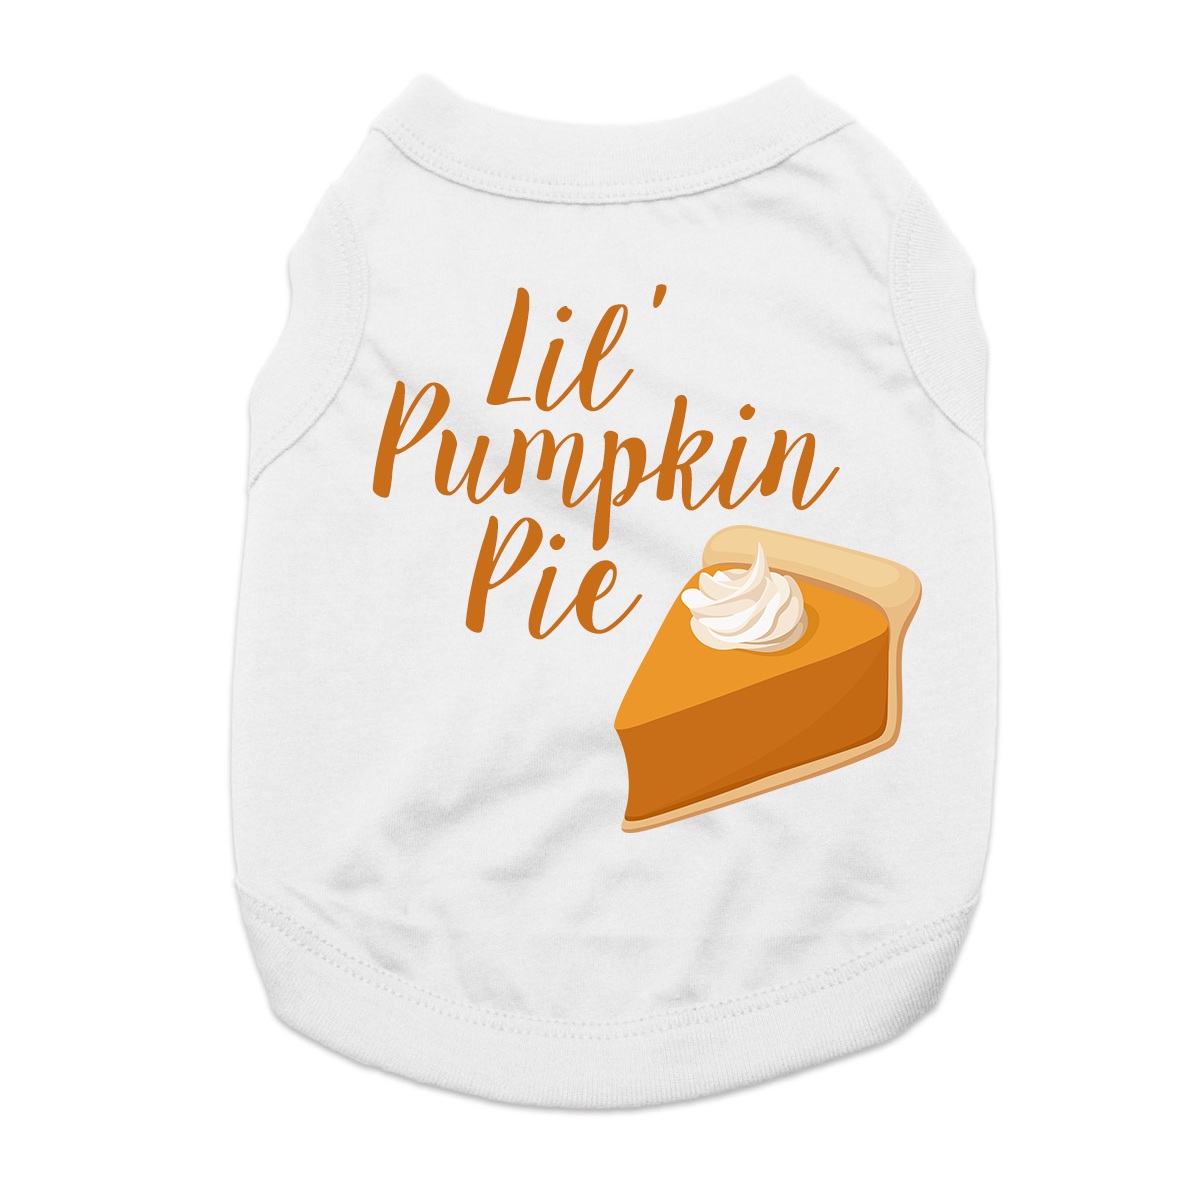 Lil' Pumpkin Pie Dog Shirt - White